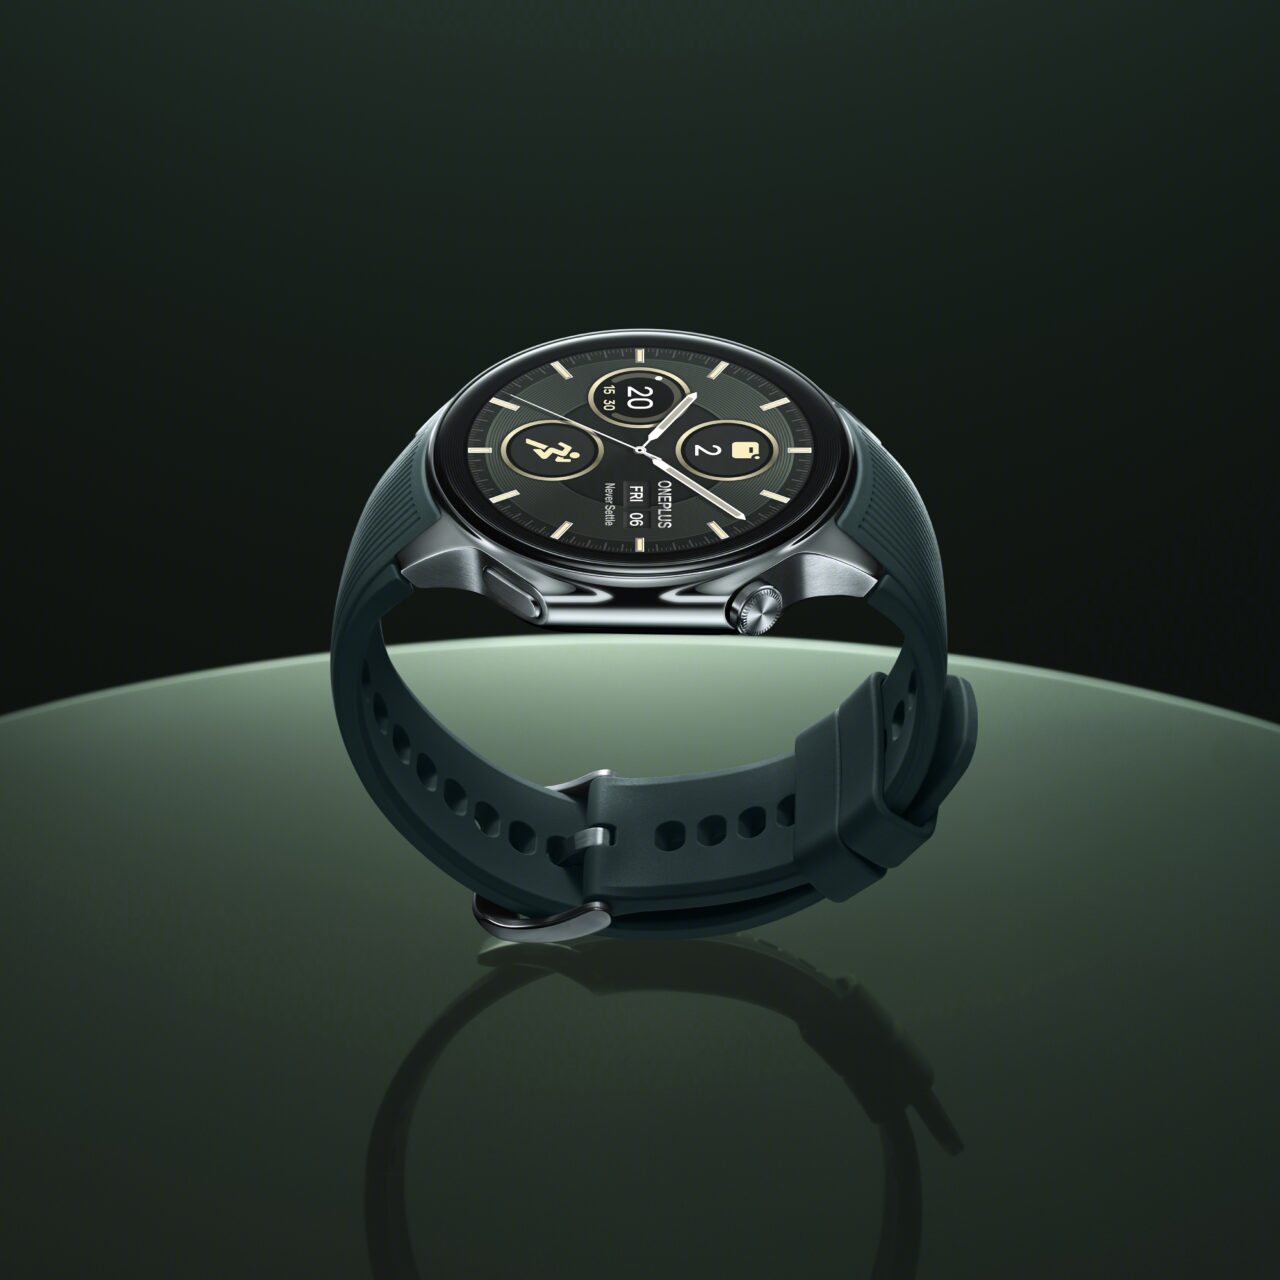 Inteligentny zegarek z czarną kopertą i paskiem z silikonu, wyświetlający tradycyjny interfejs zegarowy, na ciemnoszarym tle z odbiciem na błyszczącej powierzchni.